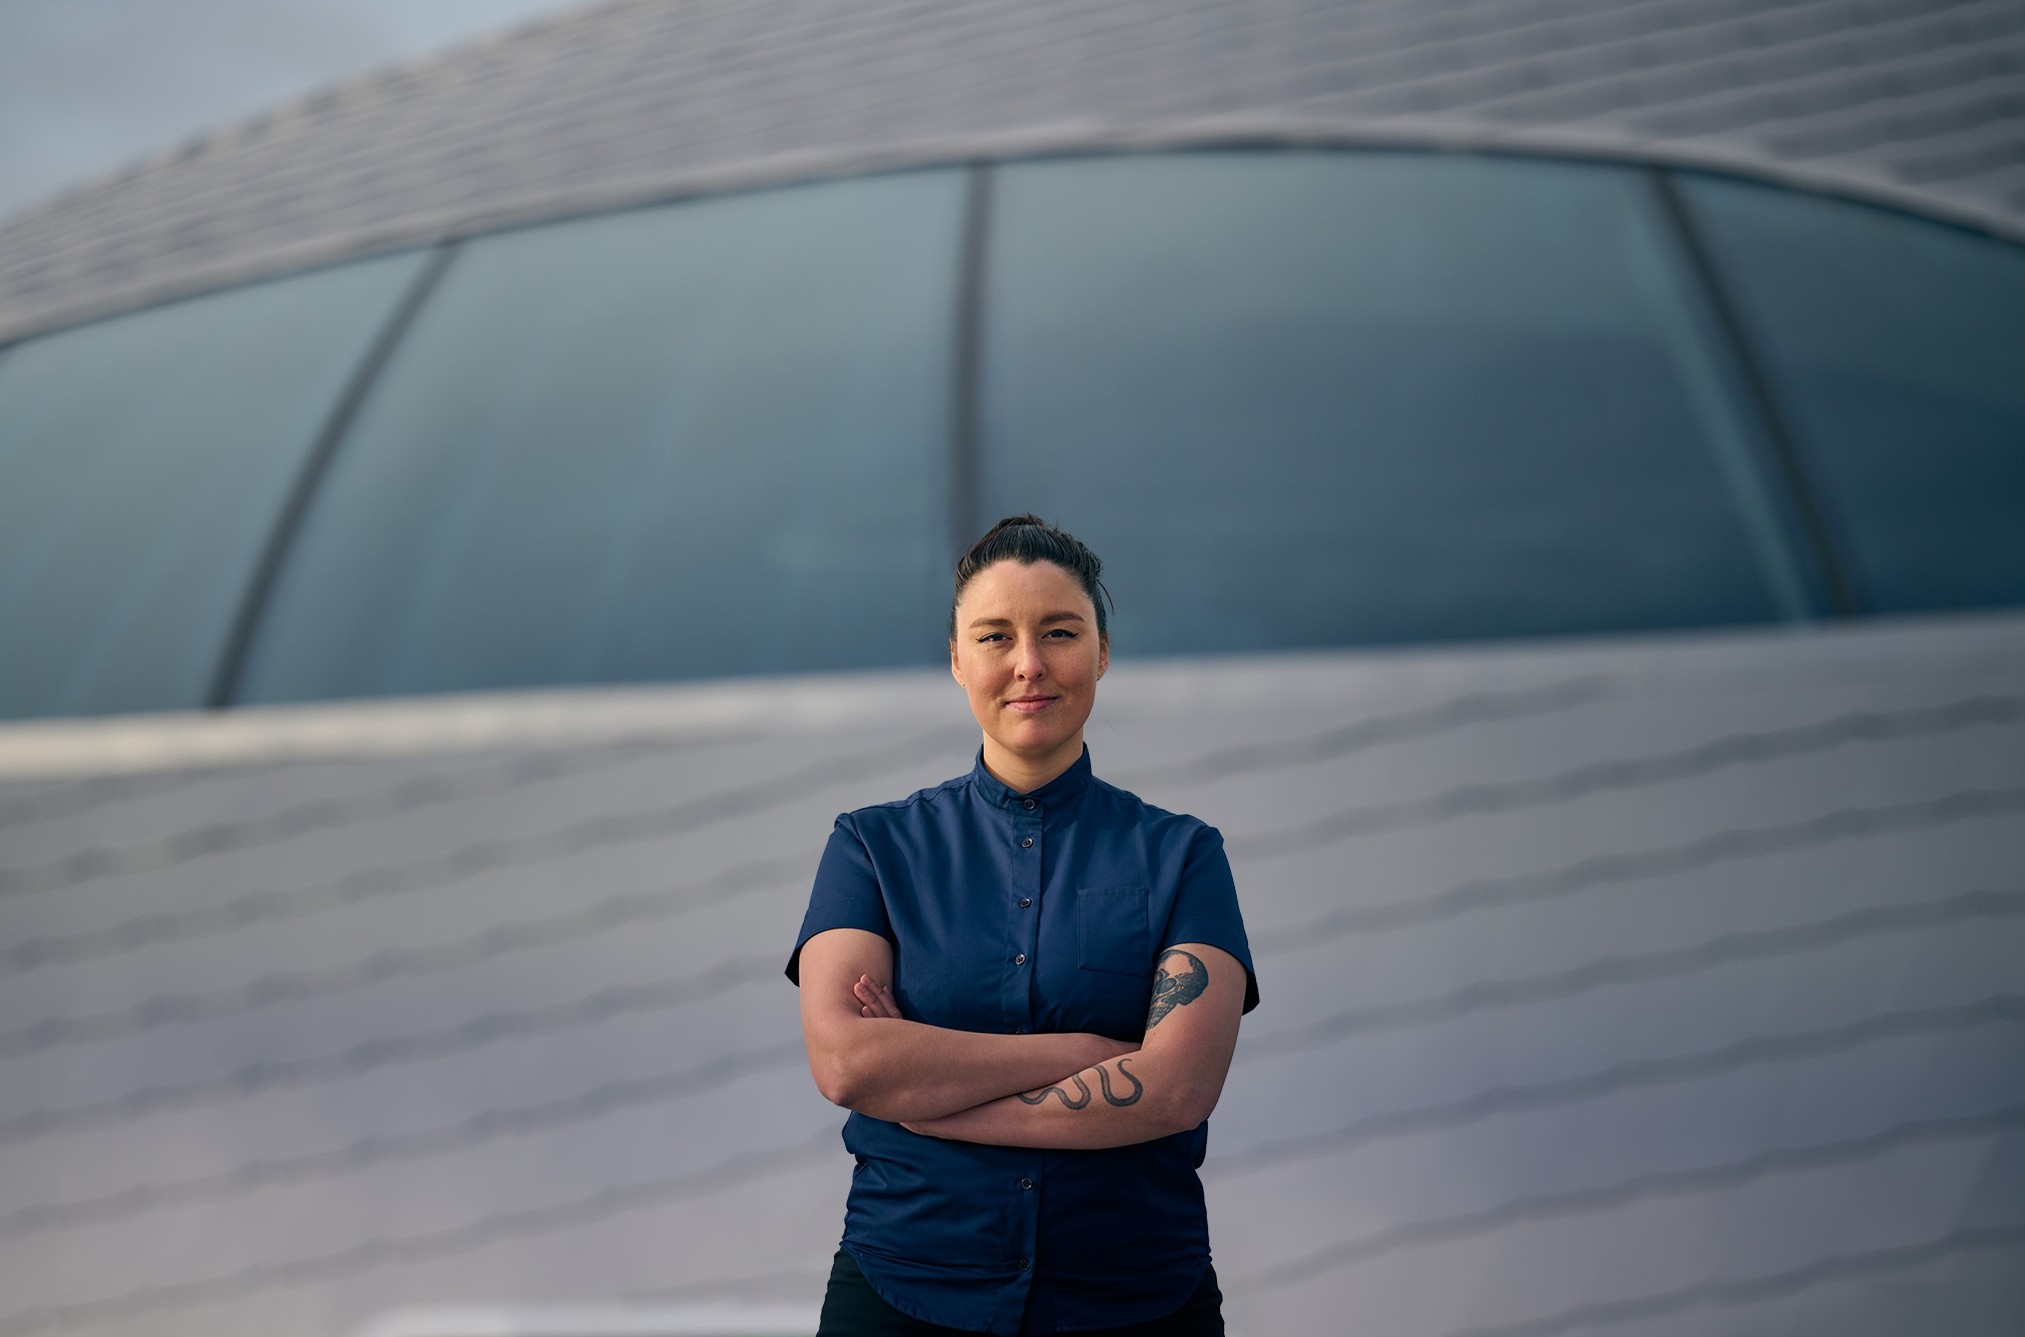 Anika Madsen karierę szefa kuchni rozpoczęła w wieku 17 lat, pracowała m.in. w restauracji Michelin Formel B. Znana z pionierskiego podejścia do gastronomii. Pasjonuje się wyszukiwaniem i wykorzystaniem lokalnych składników